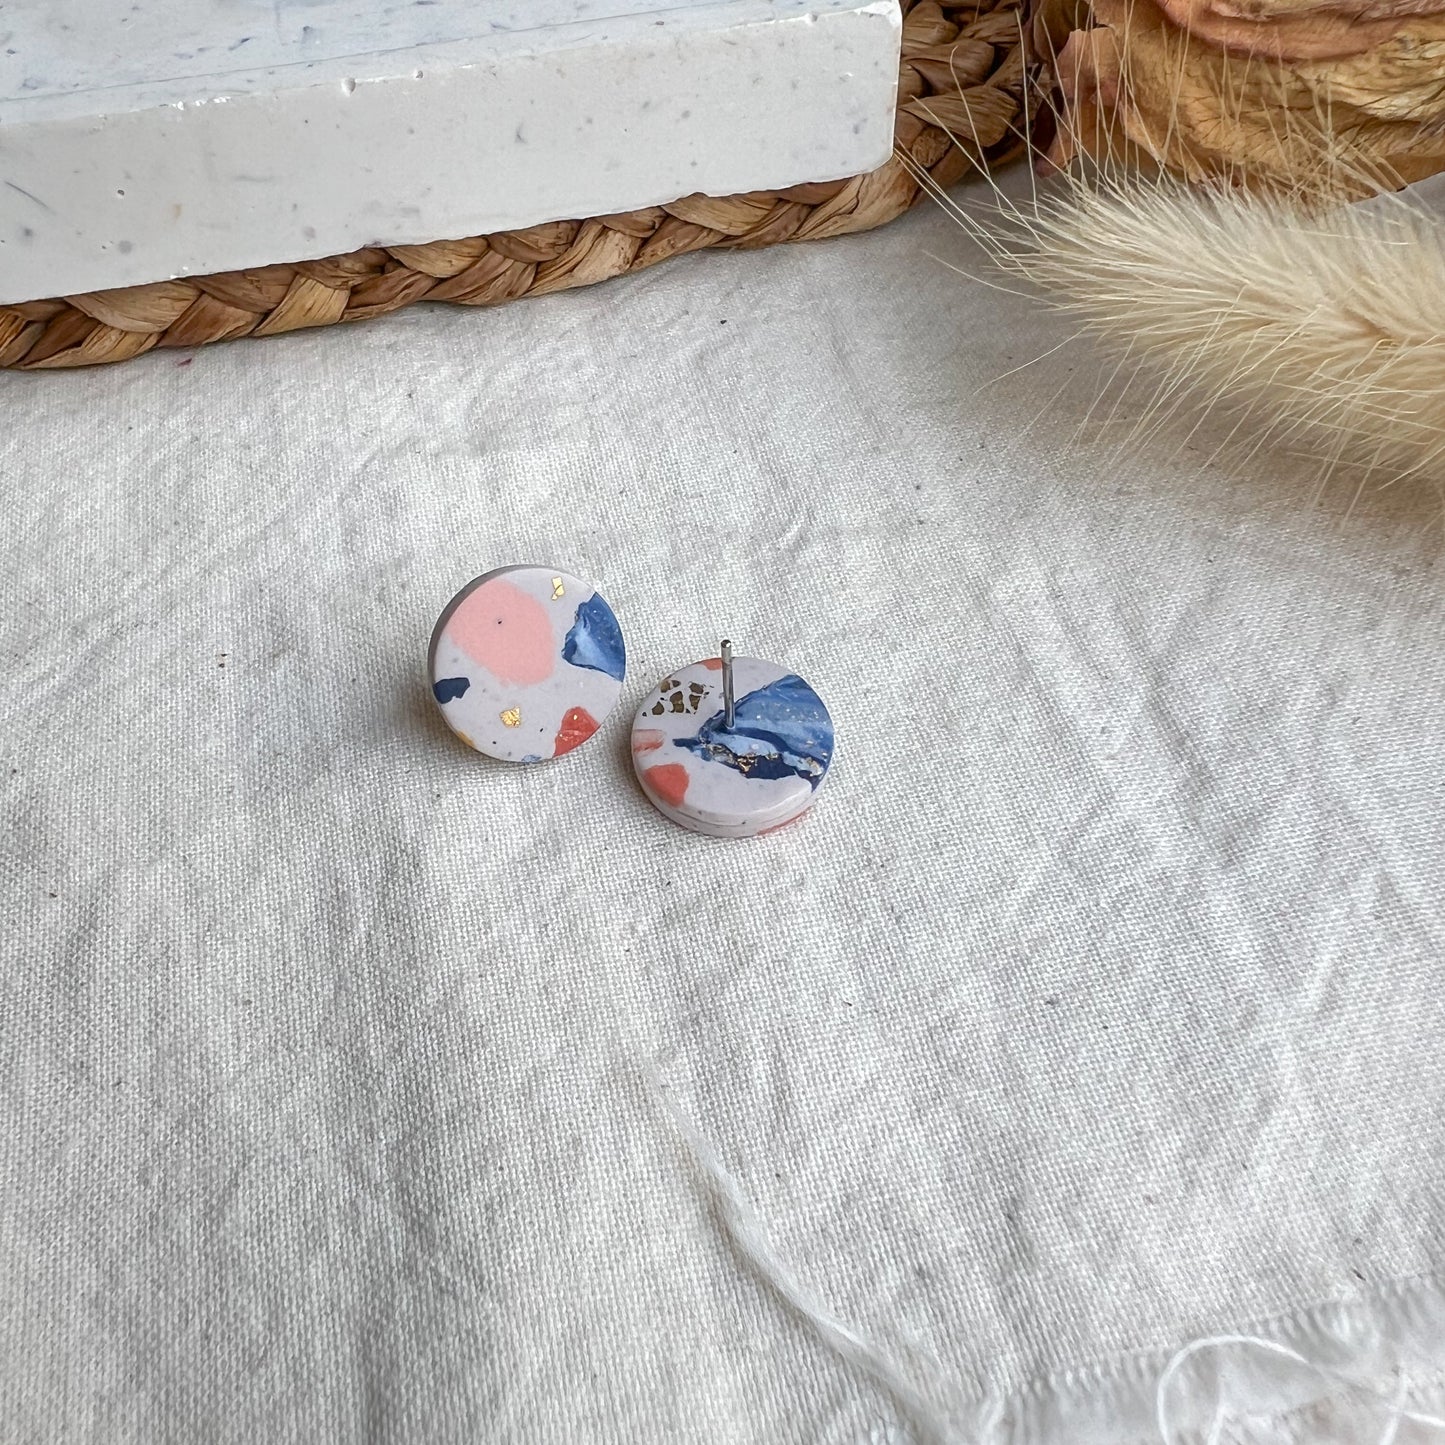 ROUND | Medium round stud earrings in multicoloured cubist terrazzo